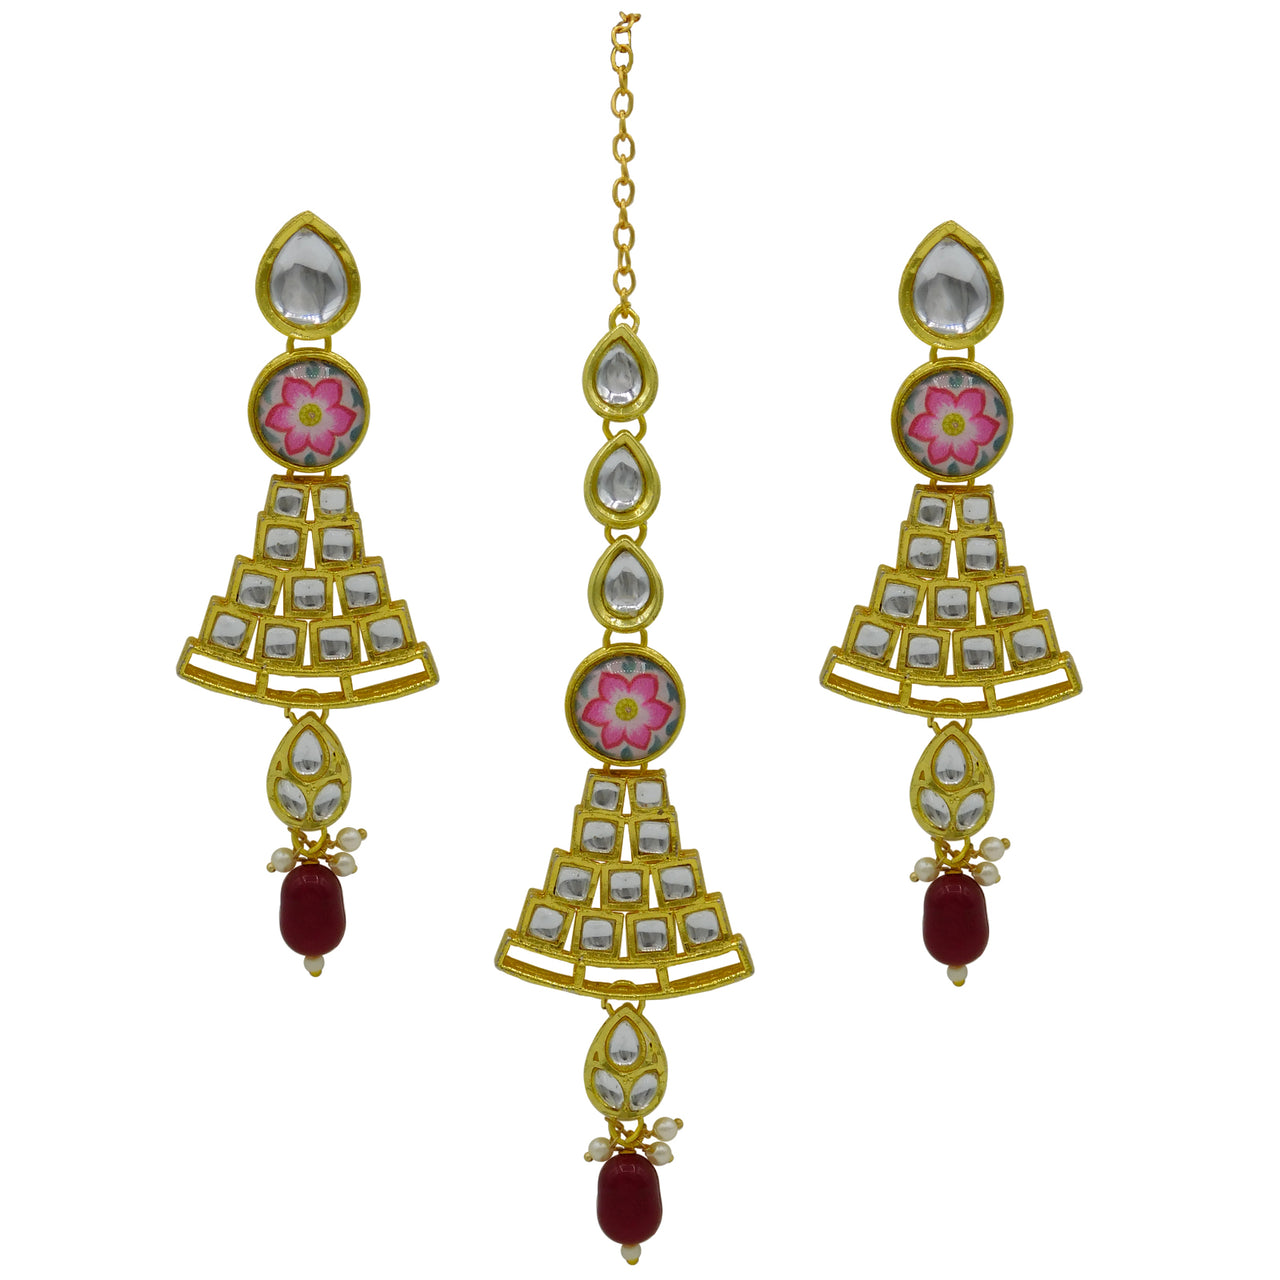 Personalized Sujwel Kundan Choker Necklace Set (SUJP01) - Sujwel